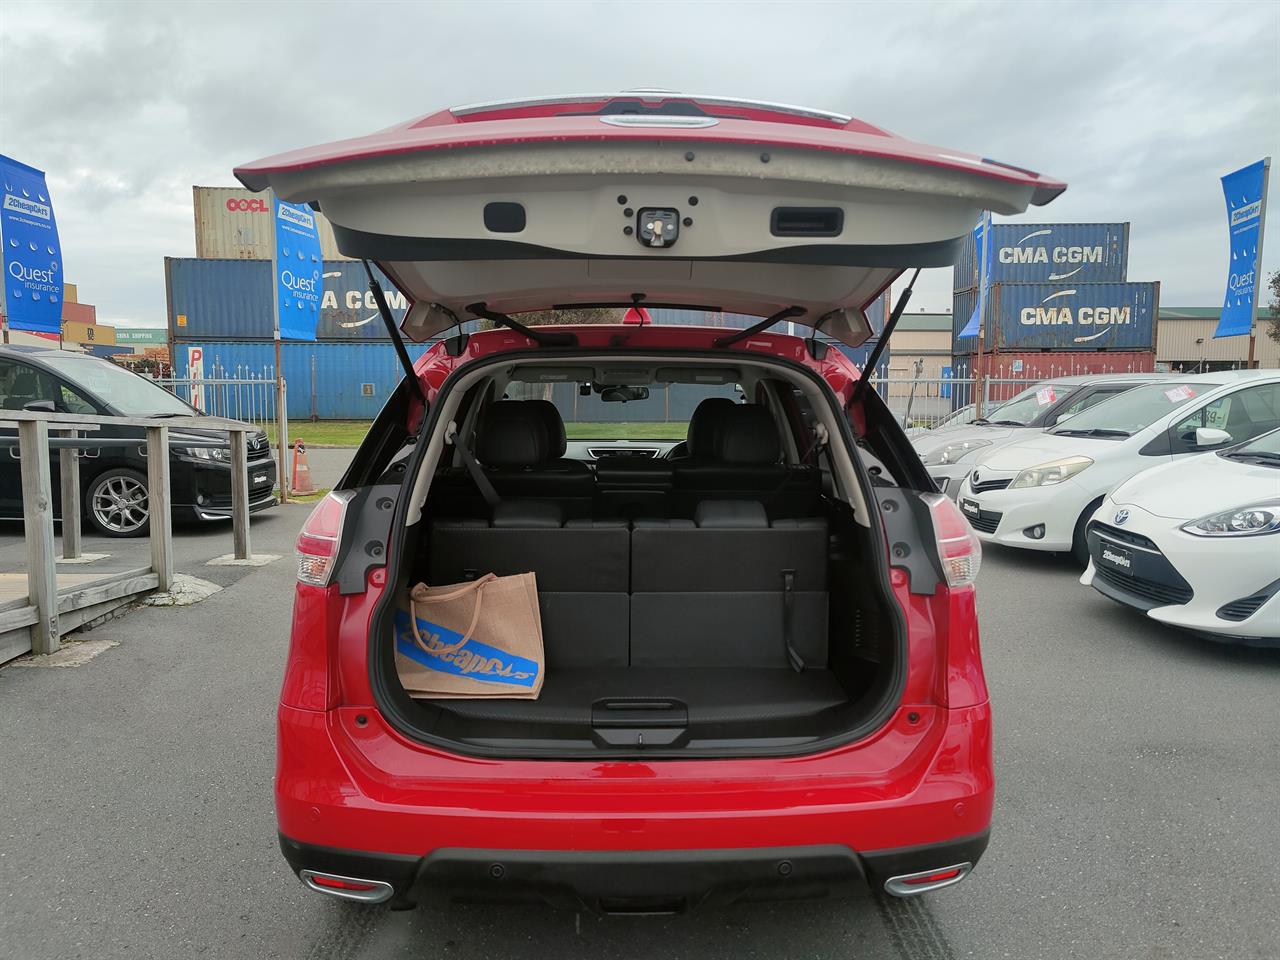 2015 Nissan X-Trail 7 Seats